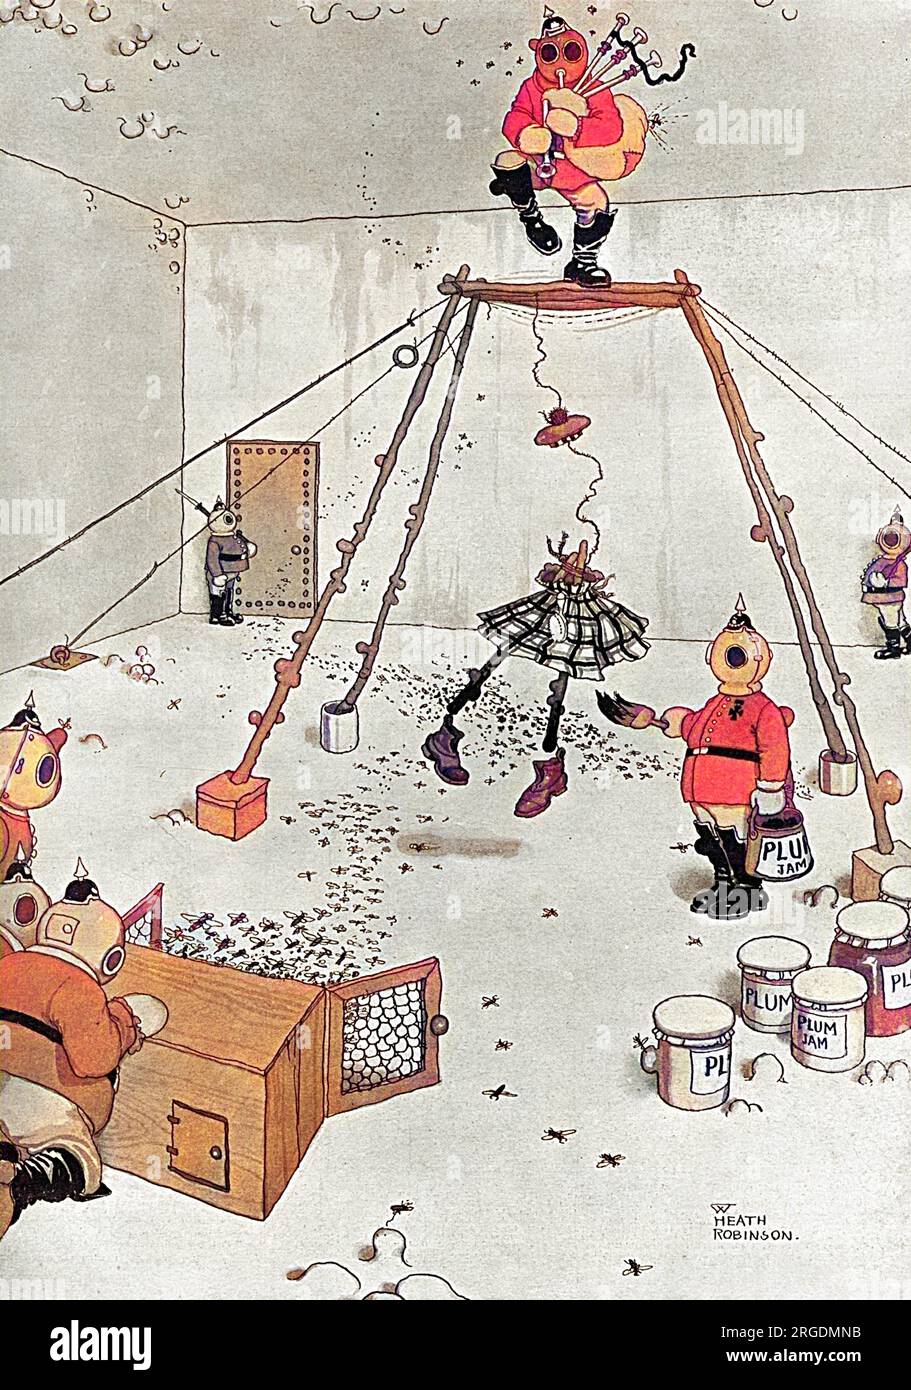 Humorvolle Illustration, die deutschere Vorstellungen zeigt, wie man britischen Truppen das Leben schwer machen kann. Hier trainieren sie Wespen mit Hilfe der allgegenwärtigen Pflaumenmarmelade, um die Beine von Kilted Highlanders zu stechen. Stockfoto